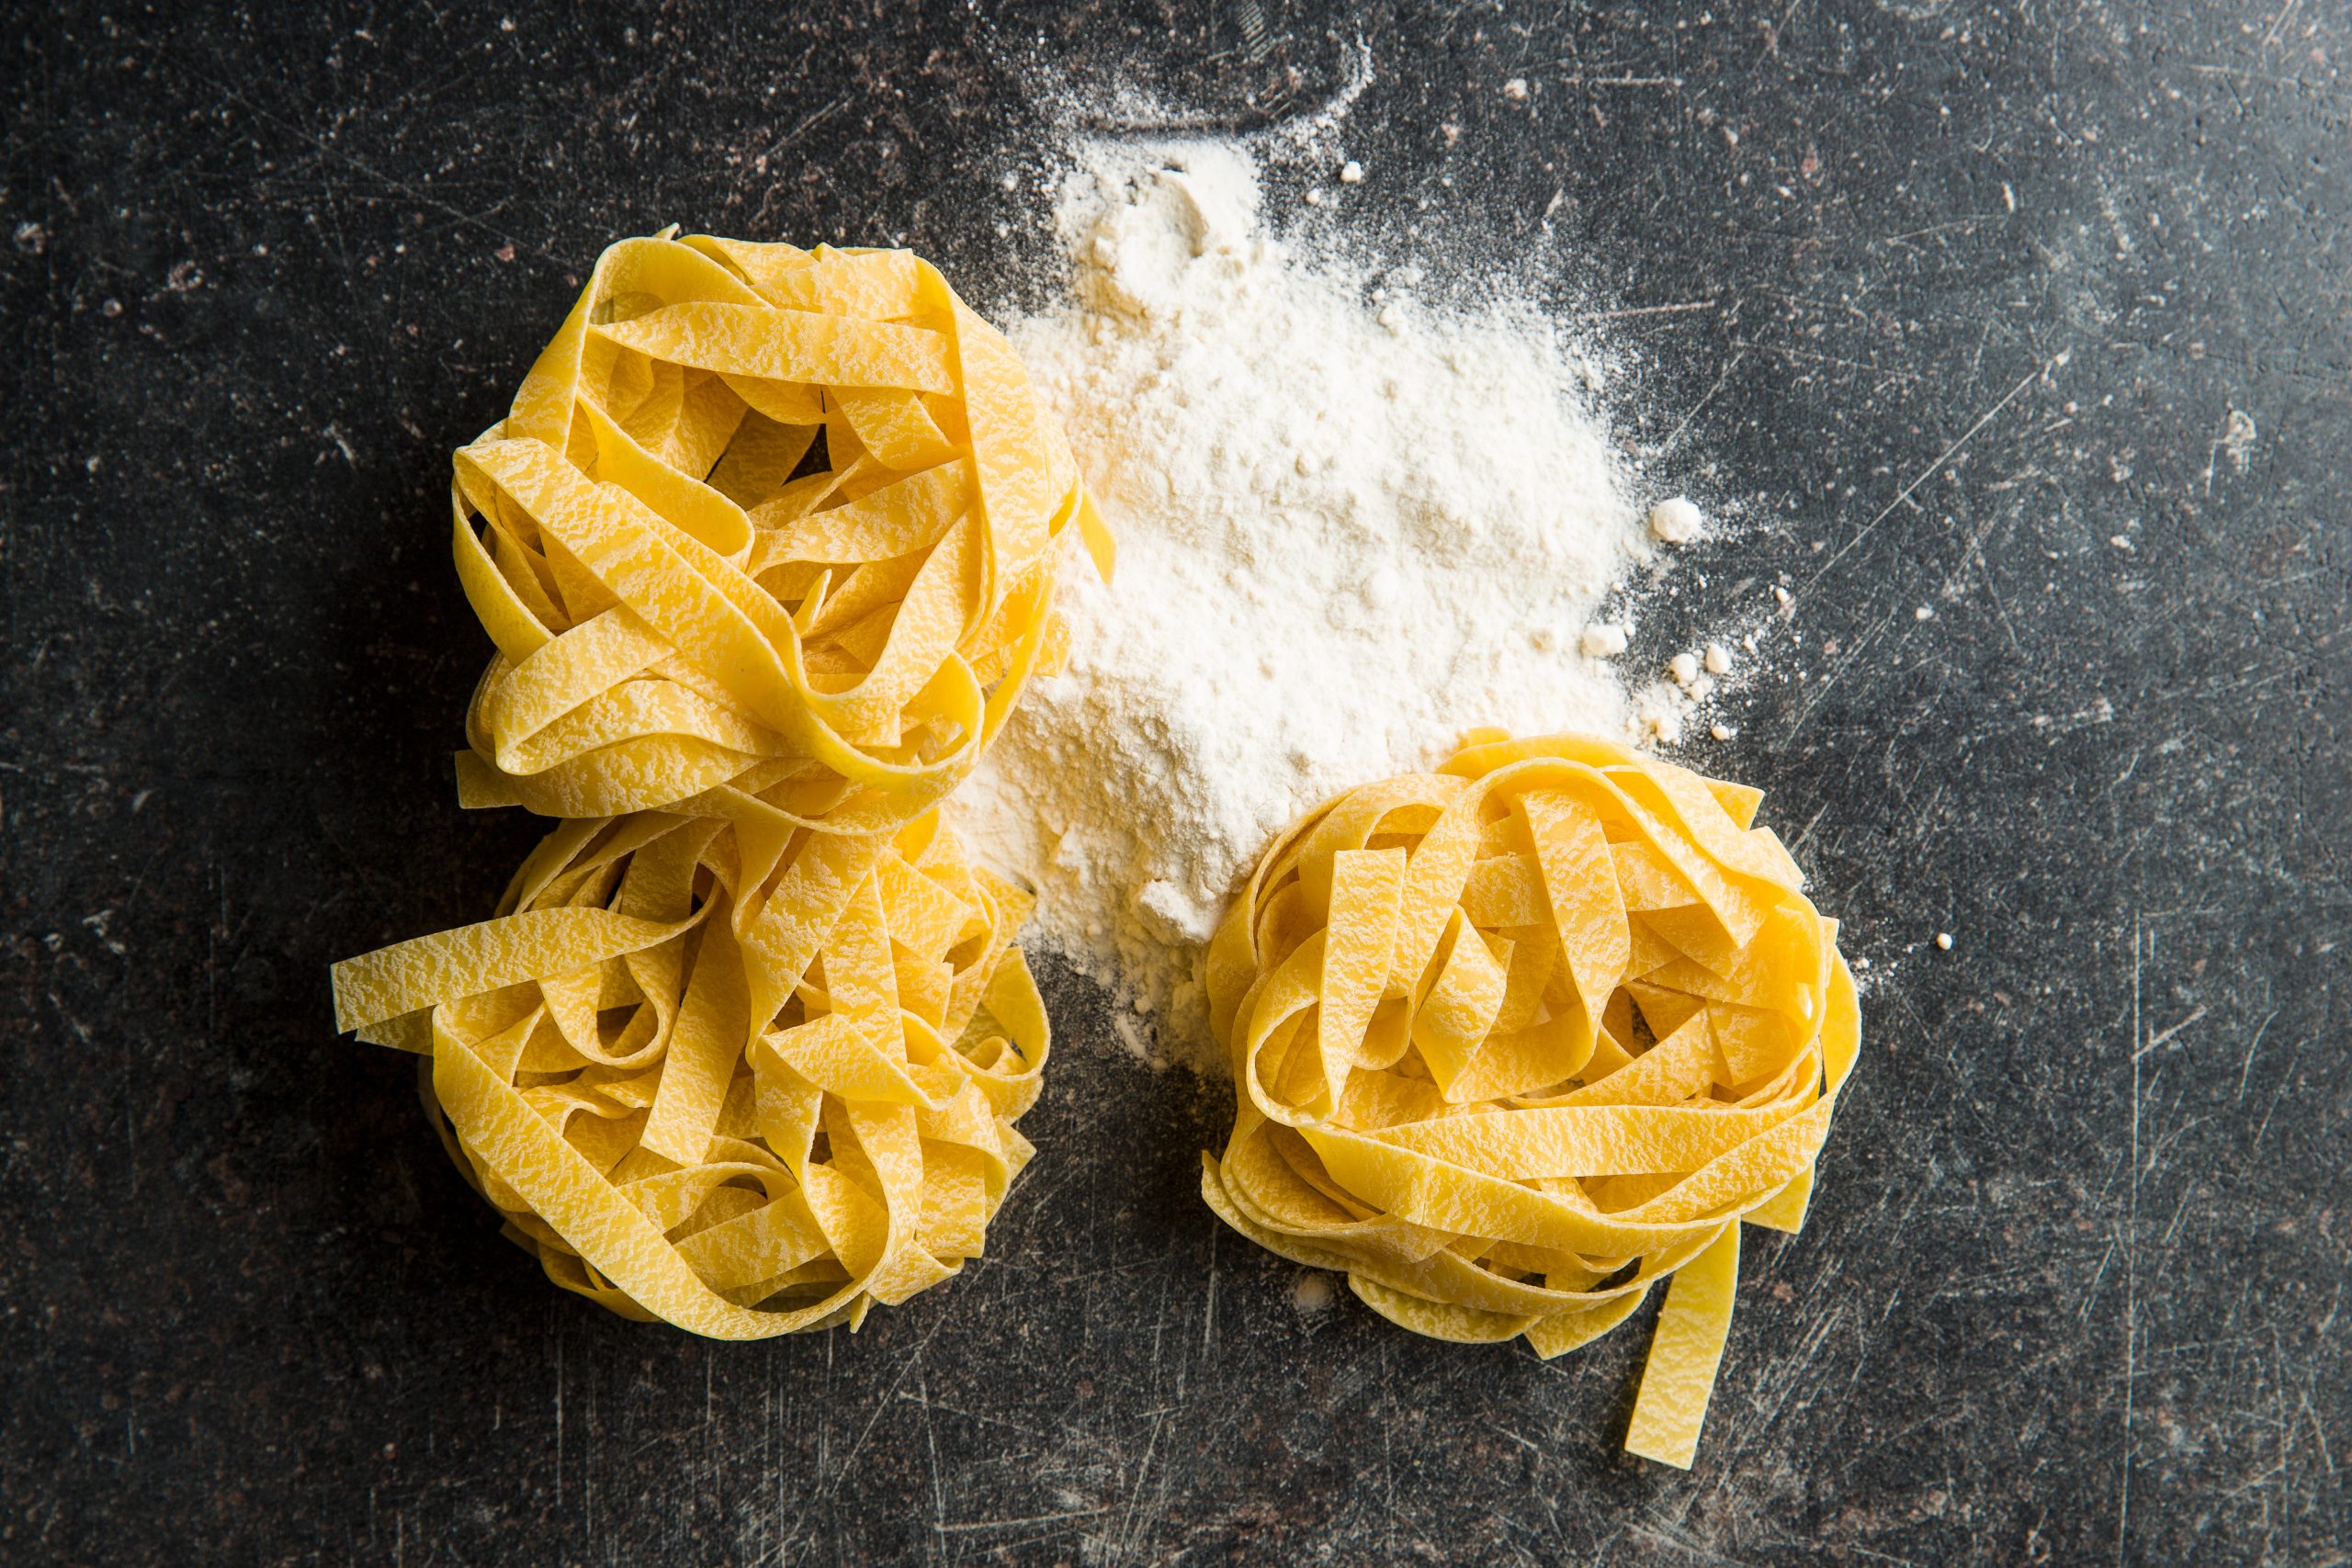 Tagliatelle és tagliolini az olasz tagliare szóból ered, jelentése „vágni”. Tradicionális olasz tészta.